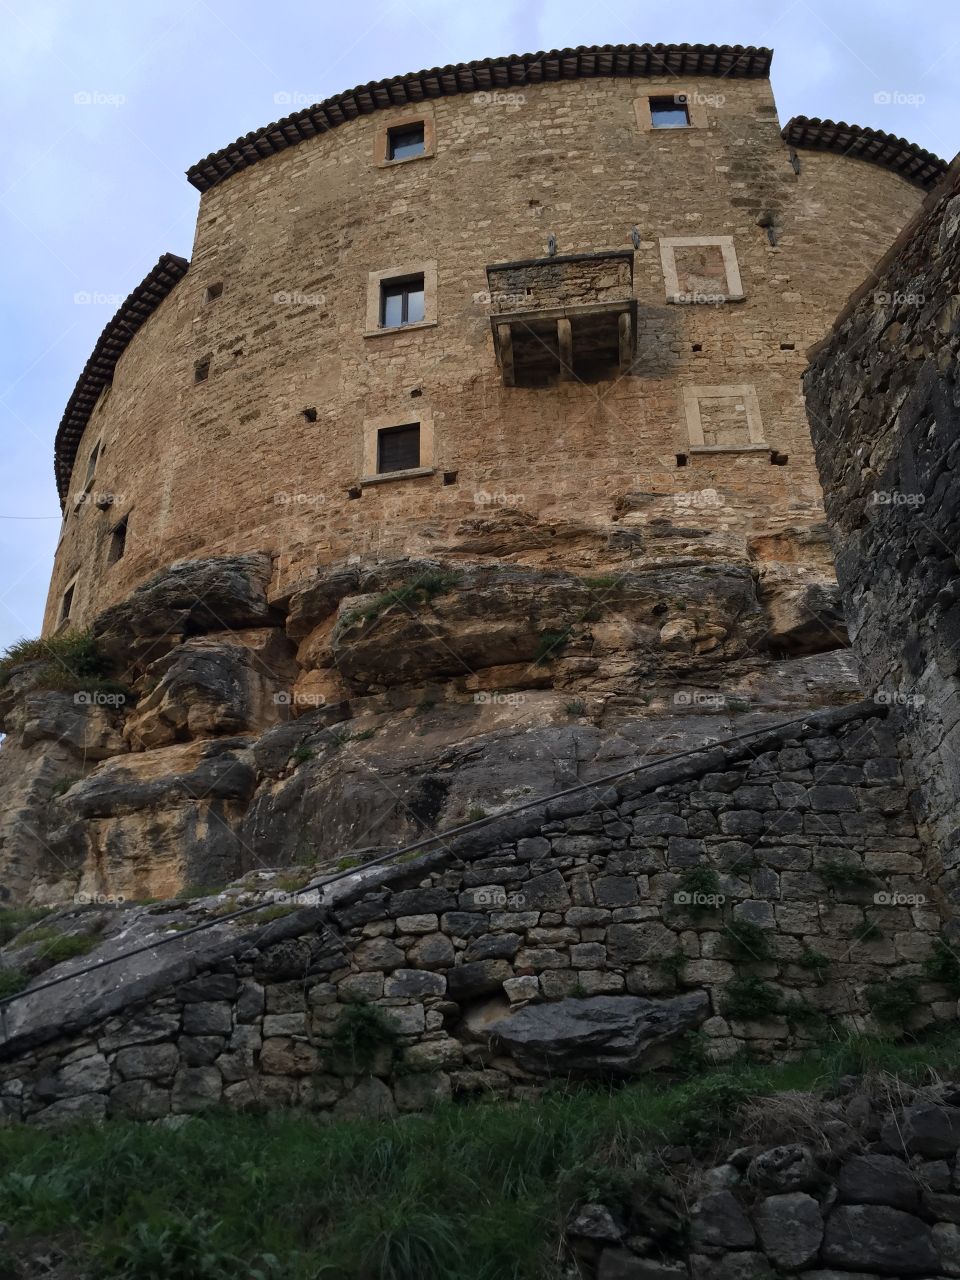 Castel di Luco, Piceno county, Marche region, Italy